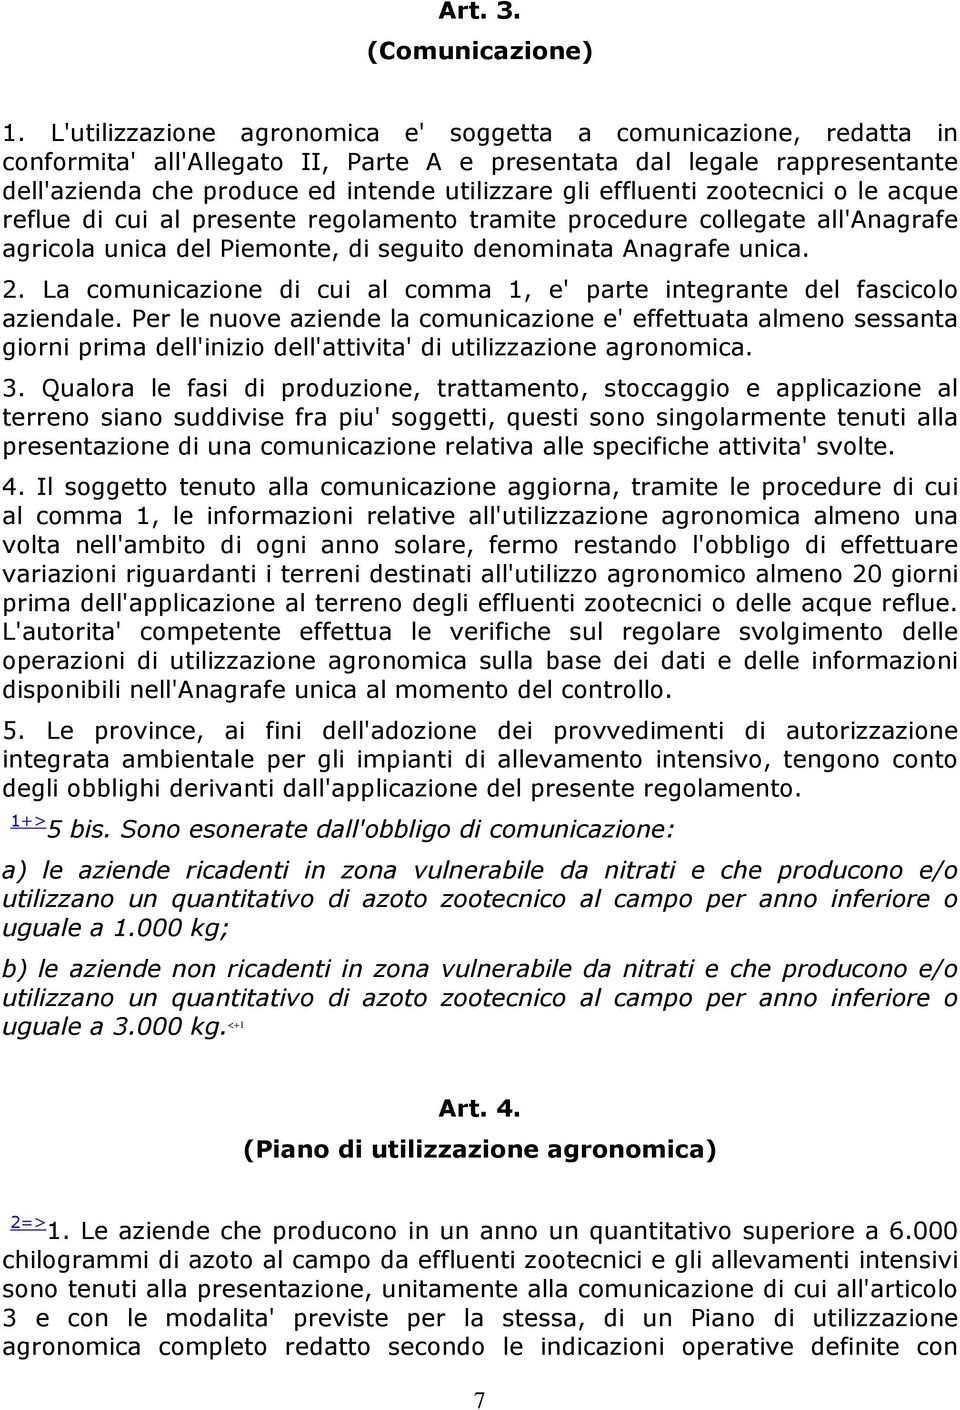 effluenti zootecnici o le acque reflue di cui al presente regolamento tramite procedure collegate all'anagrafe agricola unica del Piemonte, di seguito denominata Anagrafe unica. 2.